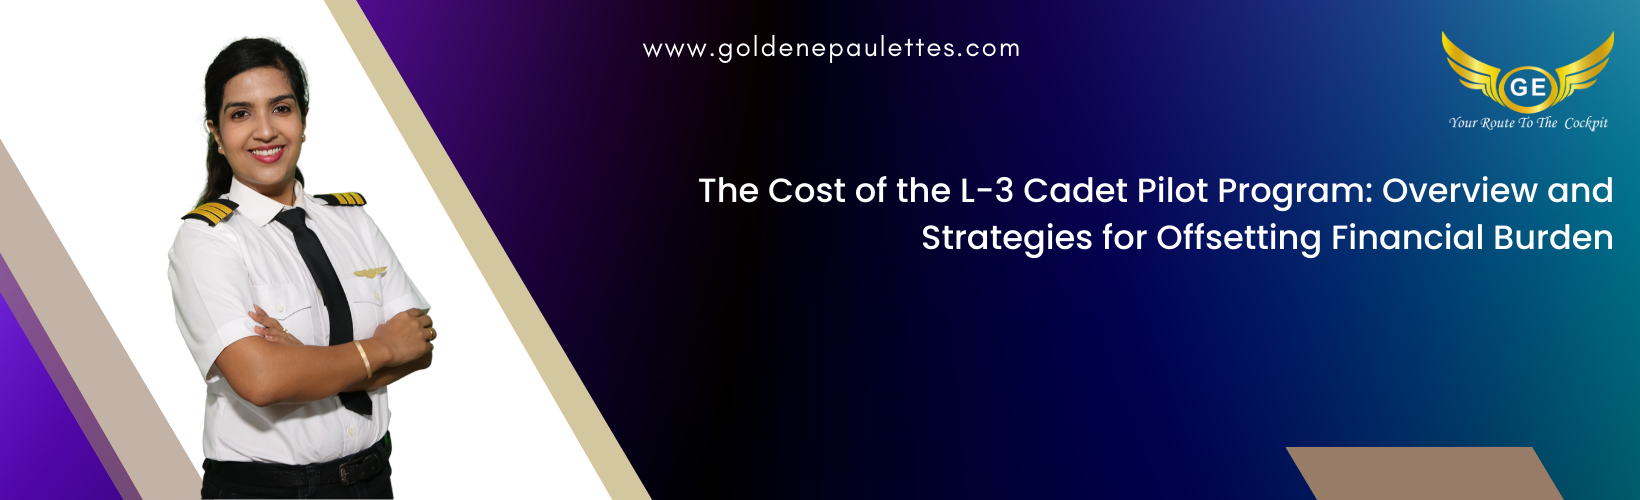 The Cost of the L-3 Cadet Pilot Program